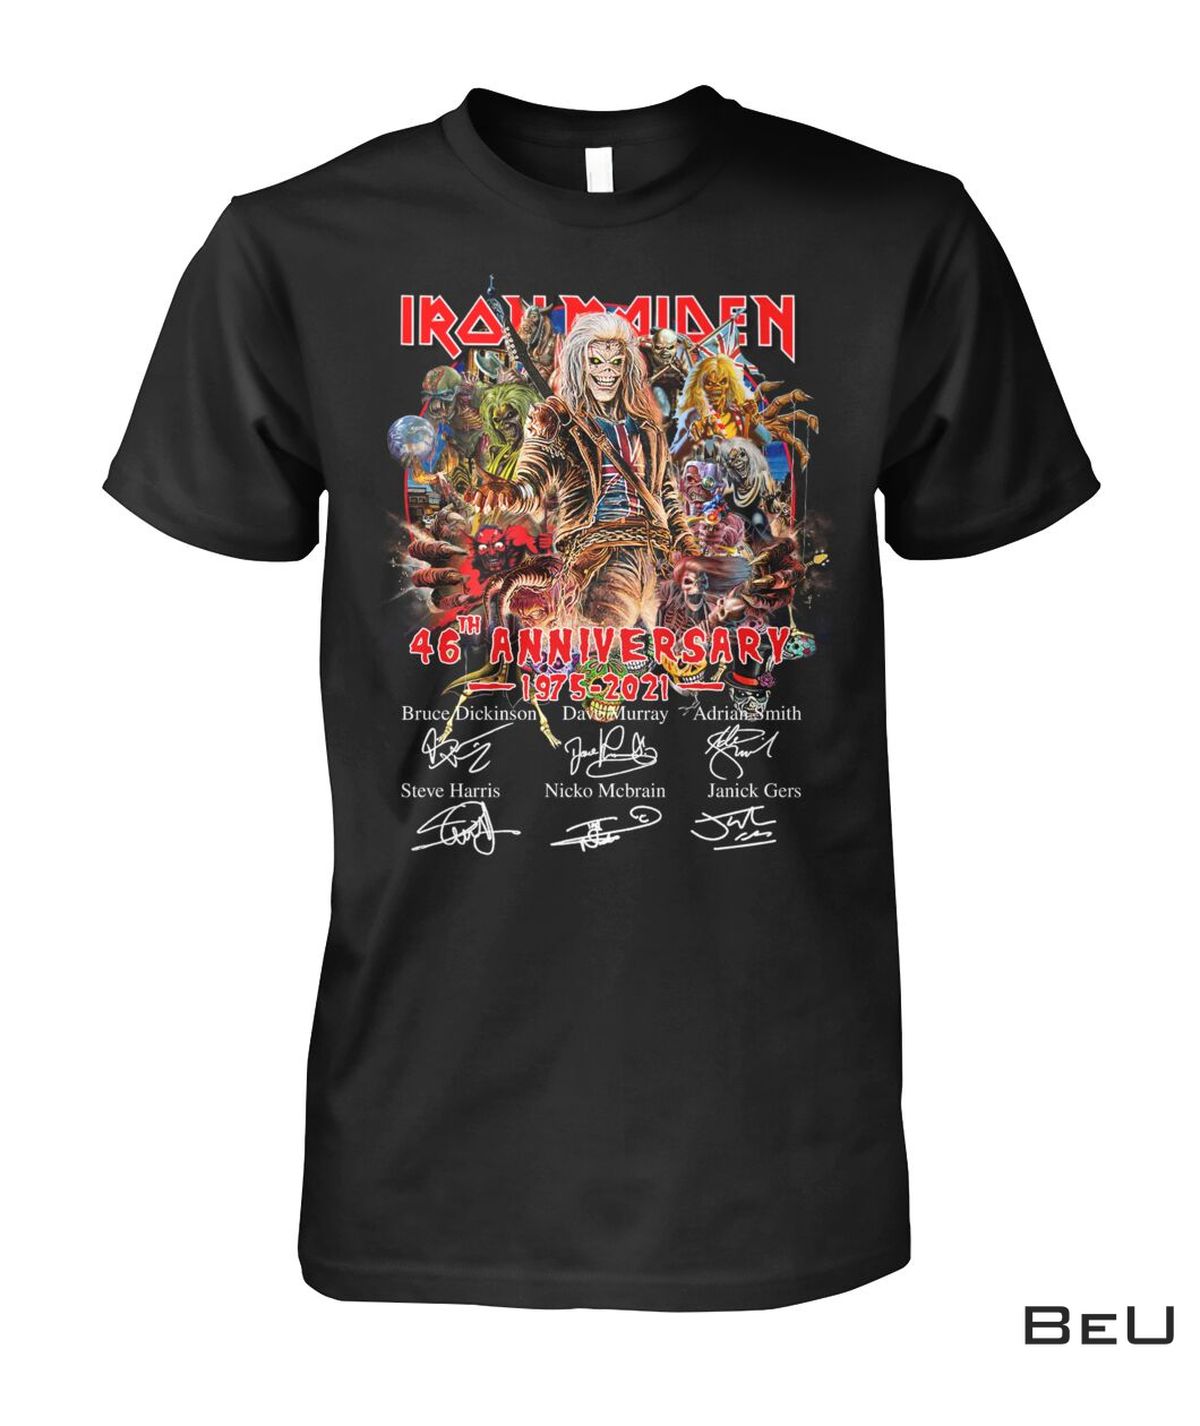 Iron Maiden 46th Anniversary 1975-2021 Shirt